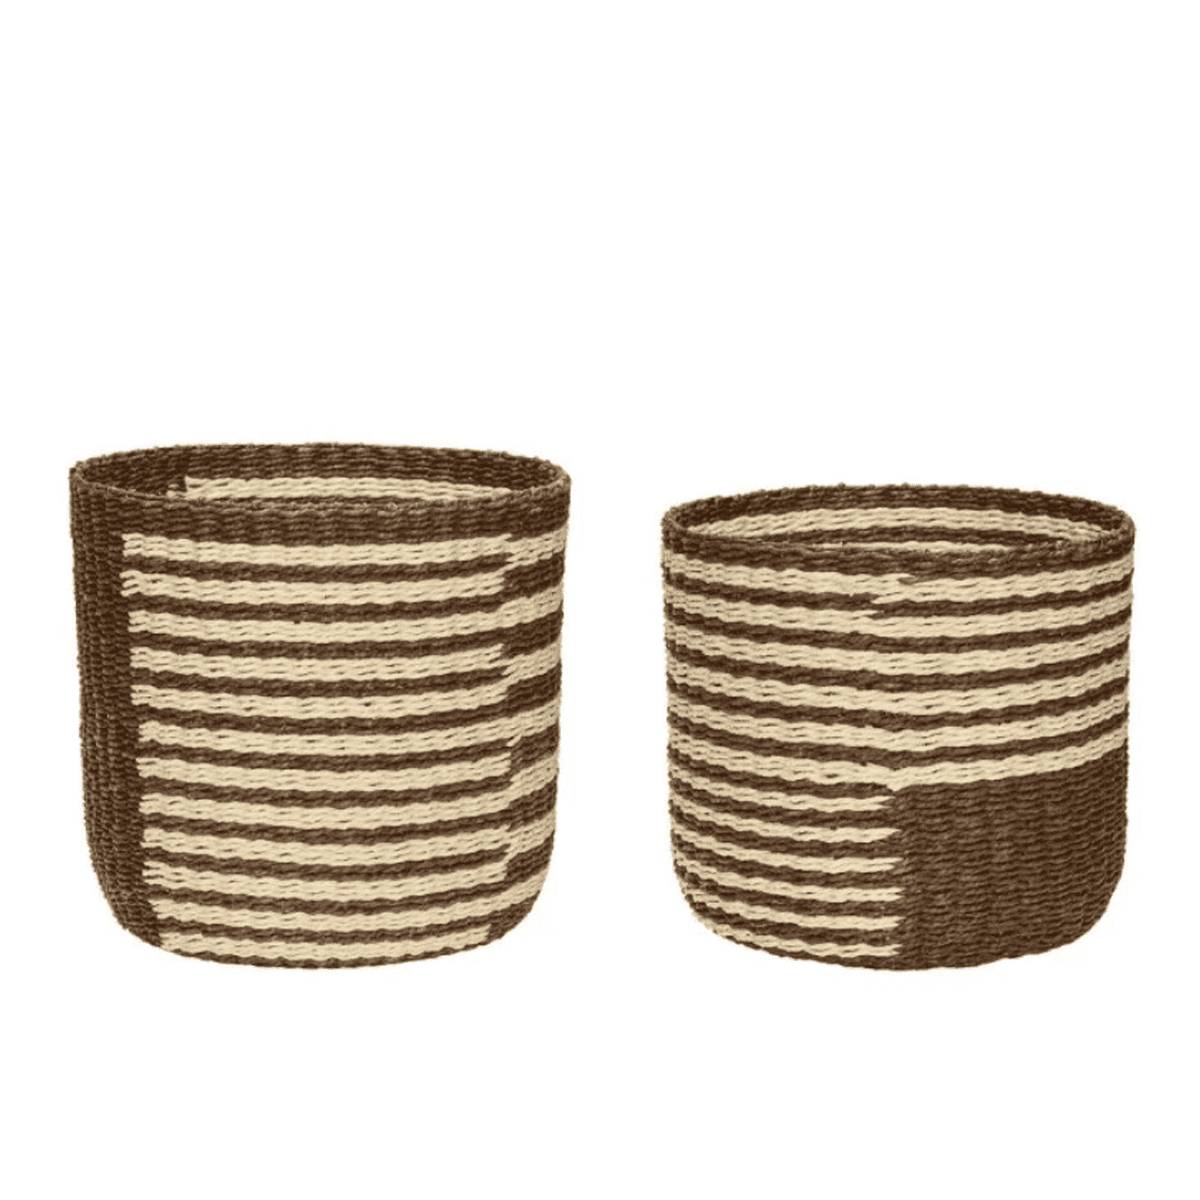 Billede af Hübsch Twine baskets (2 stk.) - natur/brun